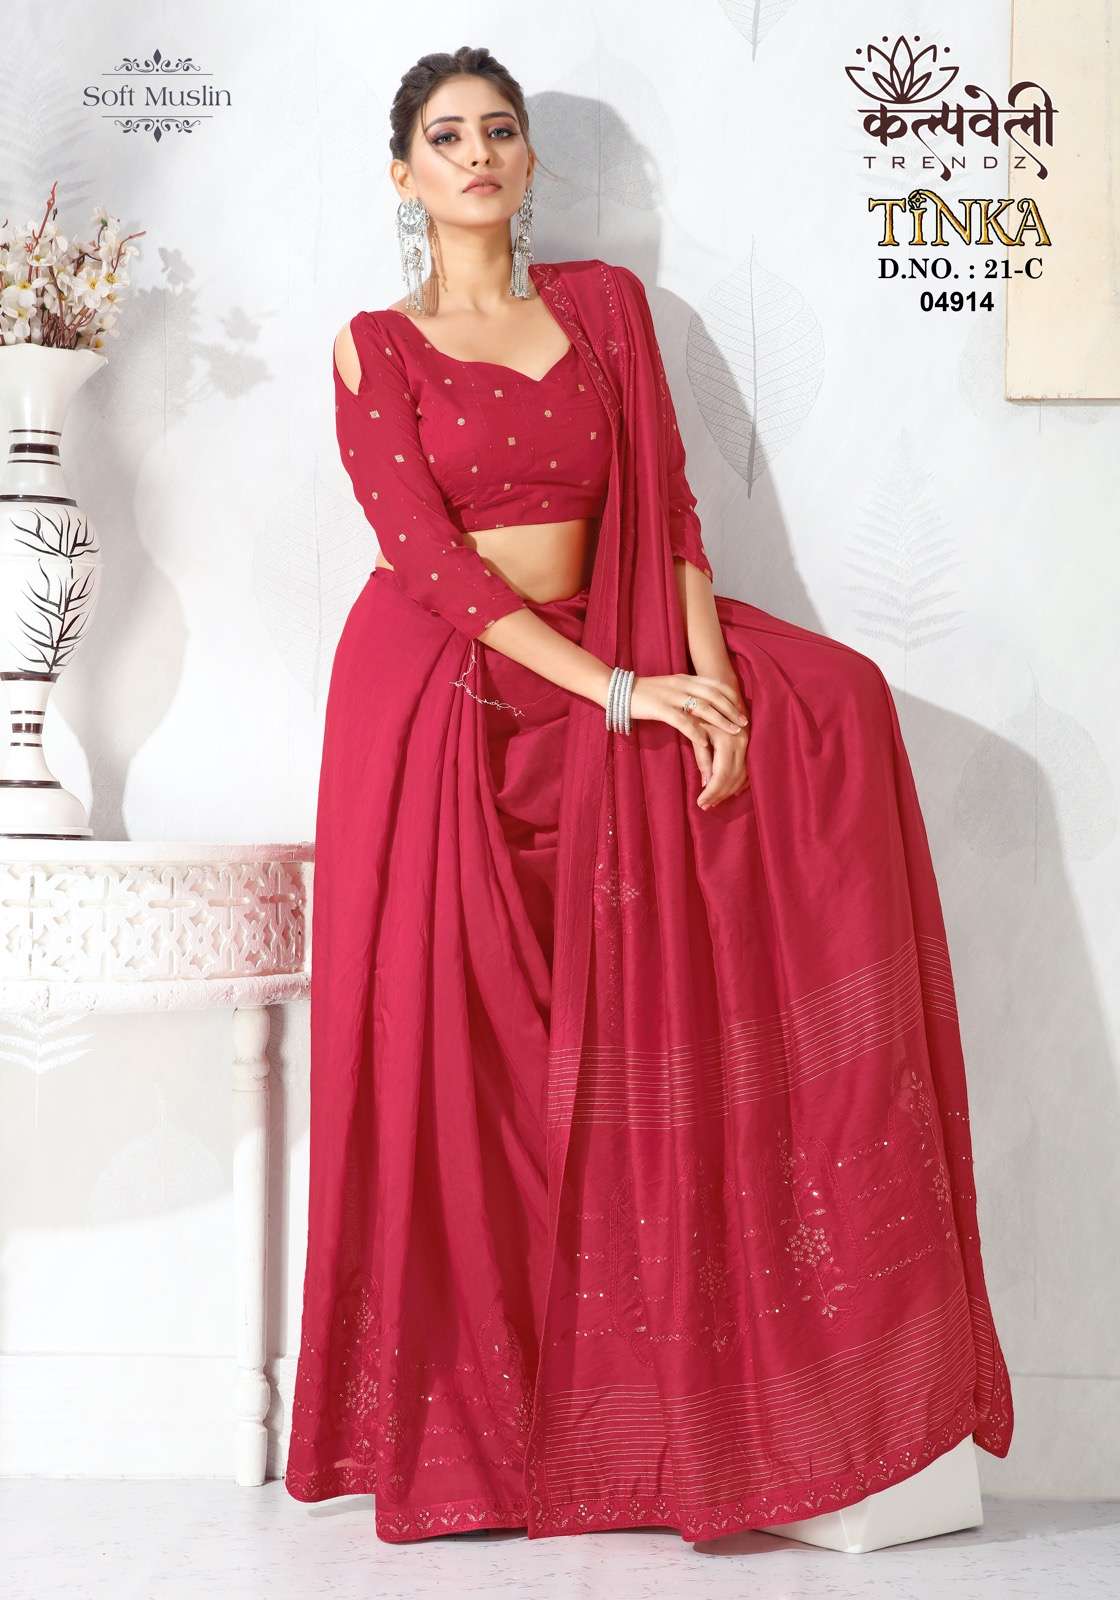 Kalpvalley trendz tinka 21 fancy sarees with buti blouse supplier